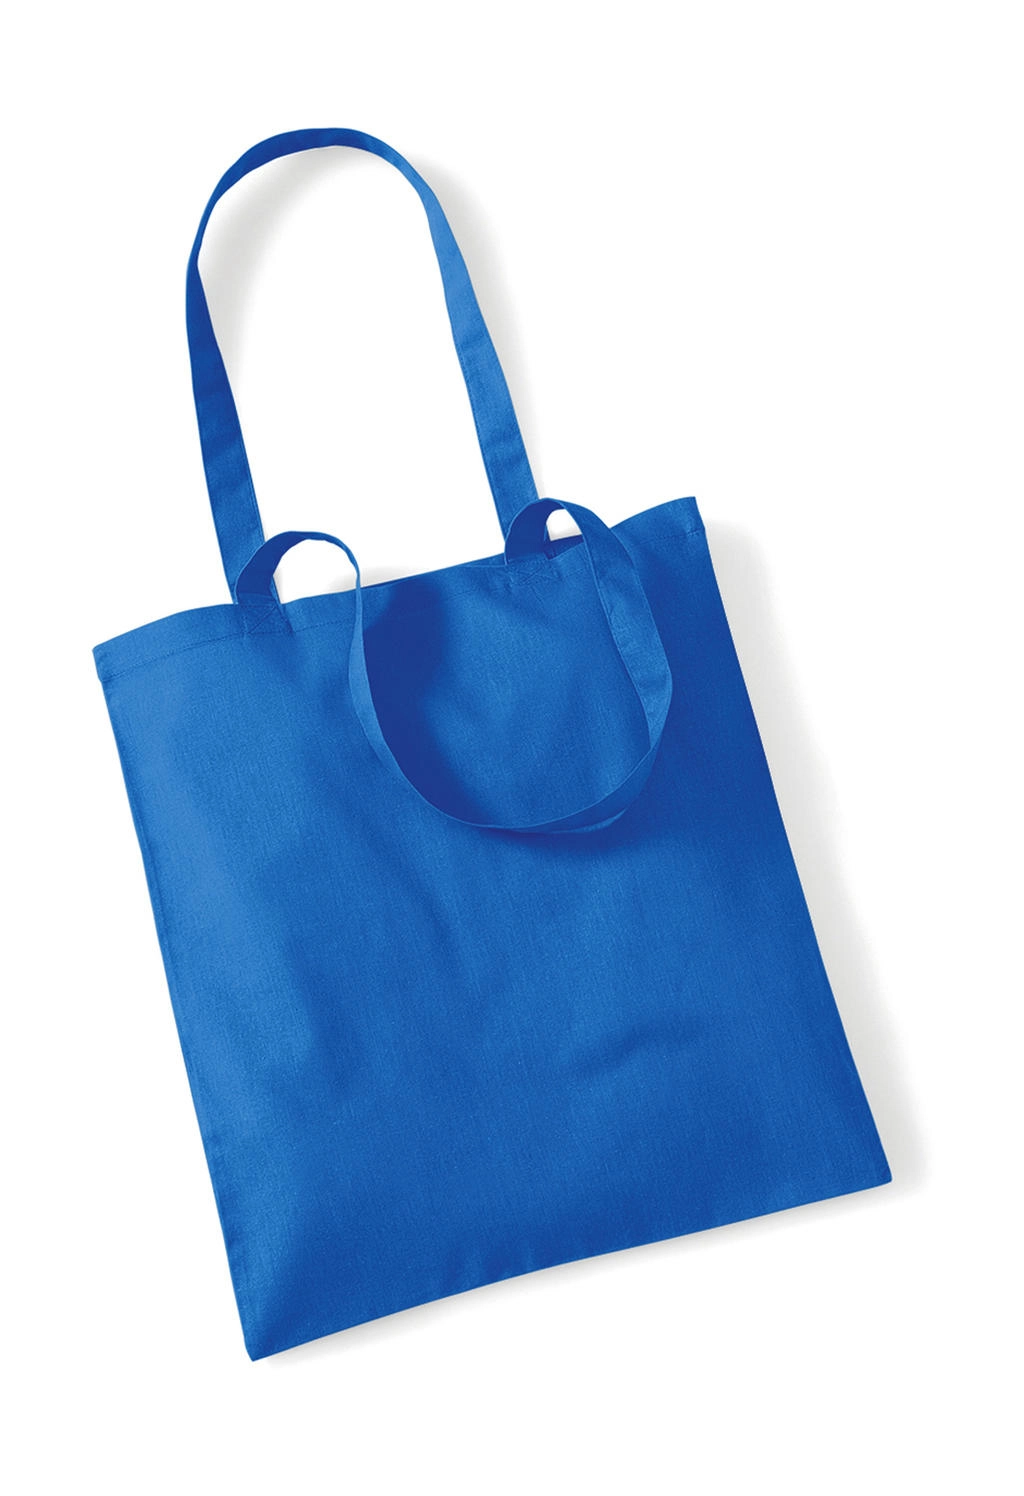 Bag for Life - Long Handles zum Besticken und Bedrucken in der Farbe Cornflower Blue mit Ihren Logo, Schriftzug oder Motiv.